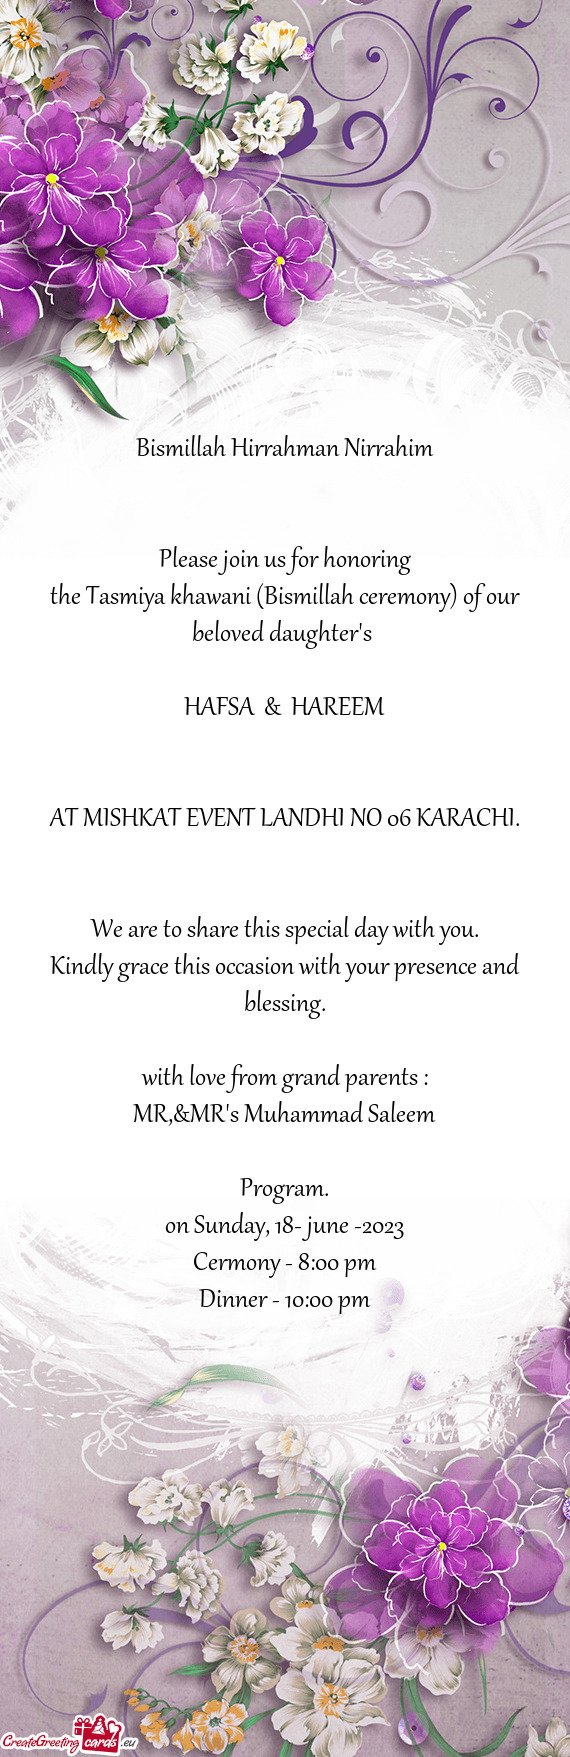 The Tasmiya khawani (Bismillah ceremony) of our beloved daughter